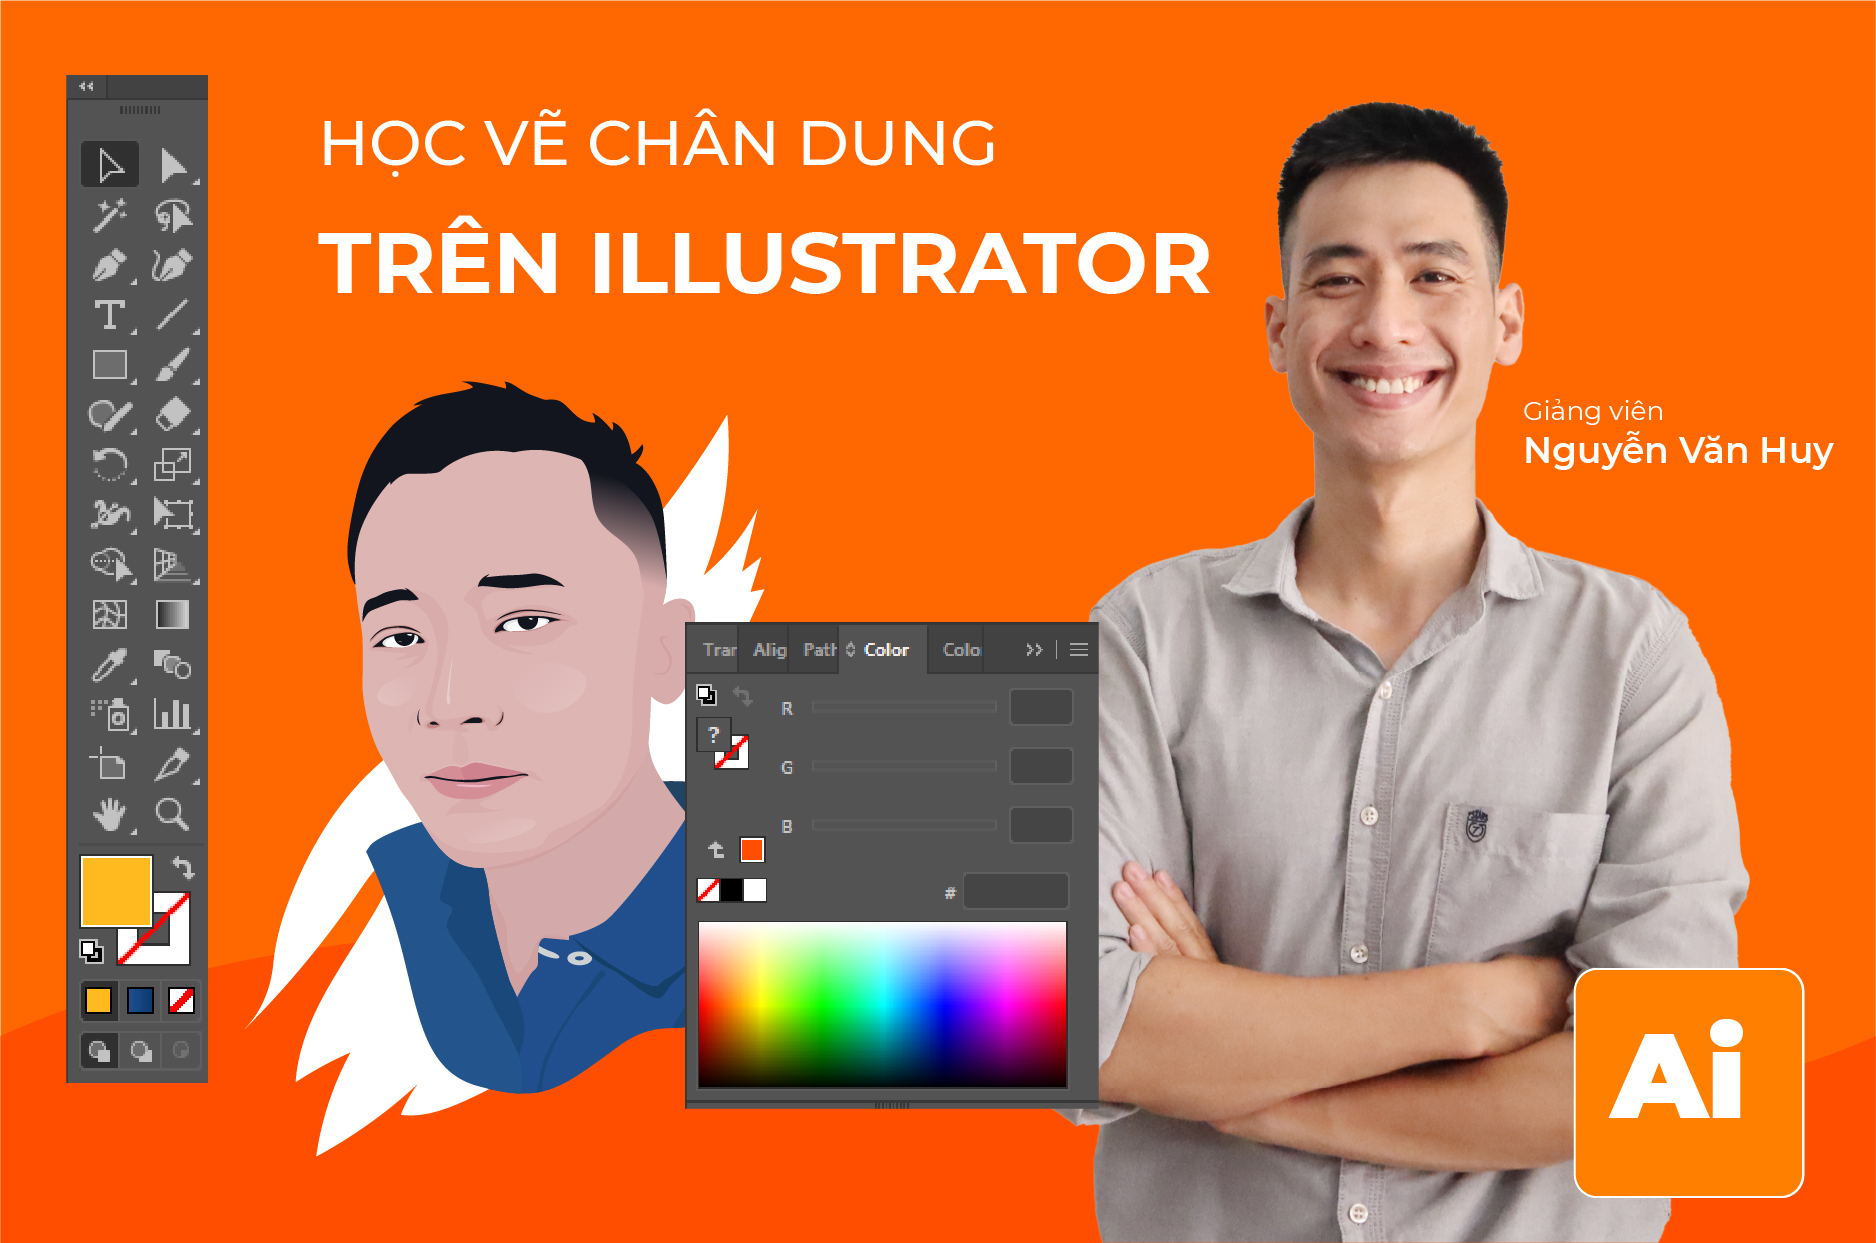 Adobe Illustrator là một phần mềm thiết kế đồ họa chuyên nghiệp có đầy đủ các tính năng và công cụ để bạn tạo ra các tác phẩm nghệ thuật vô cùng đẹp mắt. Hình ảnh liên quan đến phần mềm sẽ khiến bạn cảm thấy thú vị và tò mò muốn khám phá thêm.